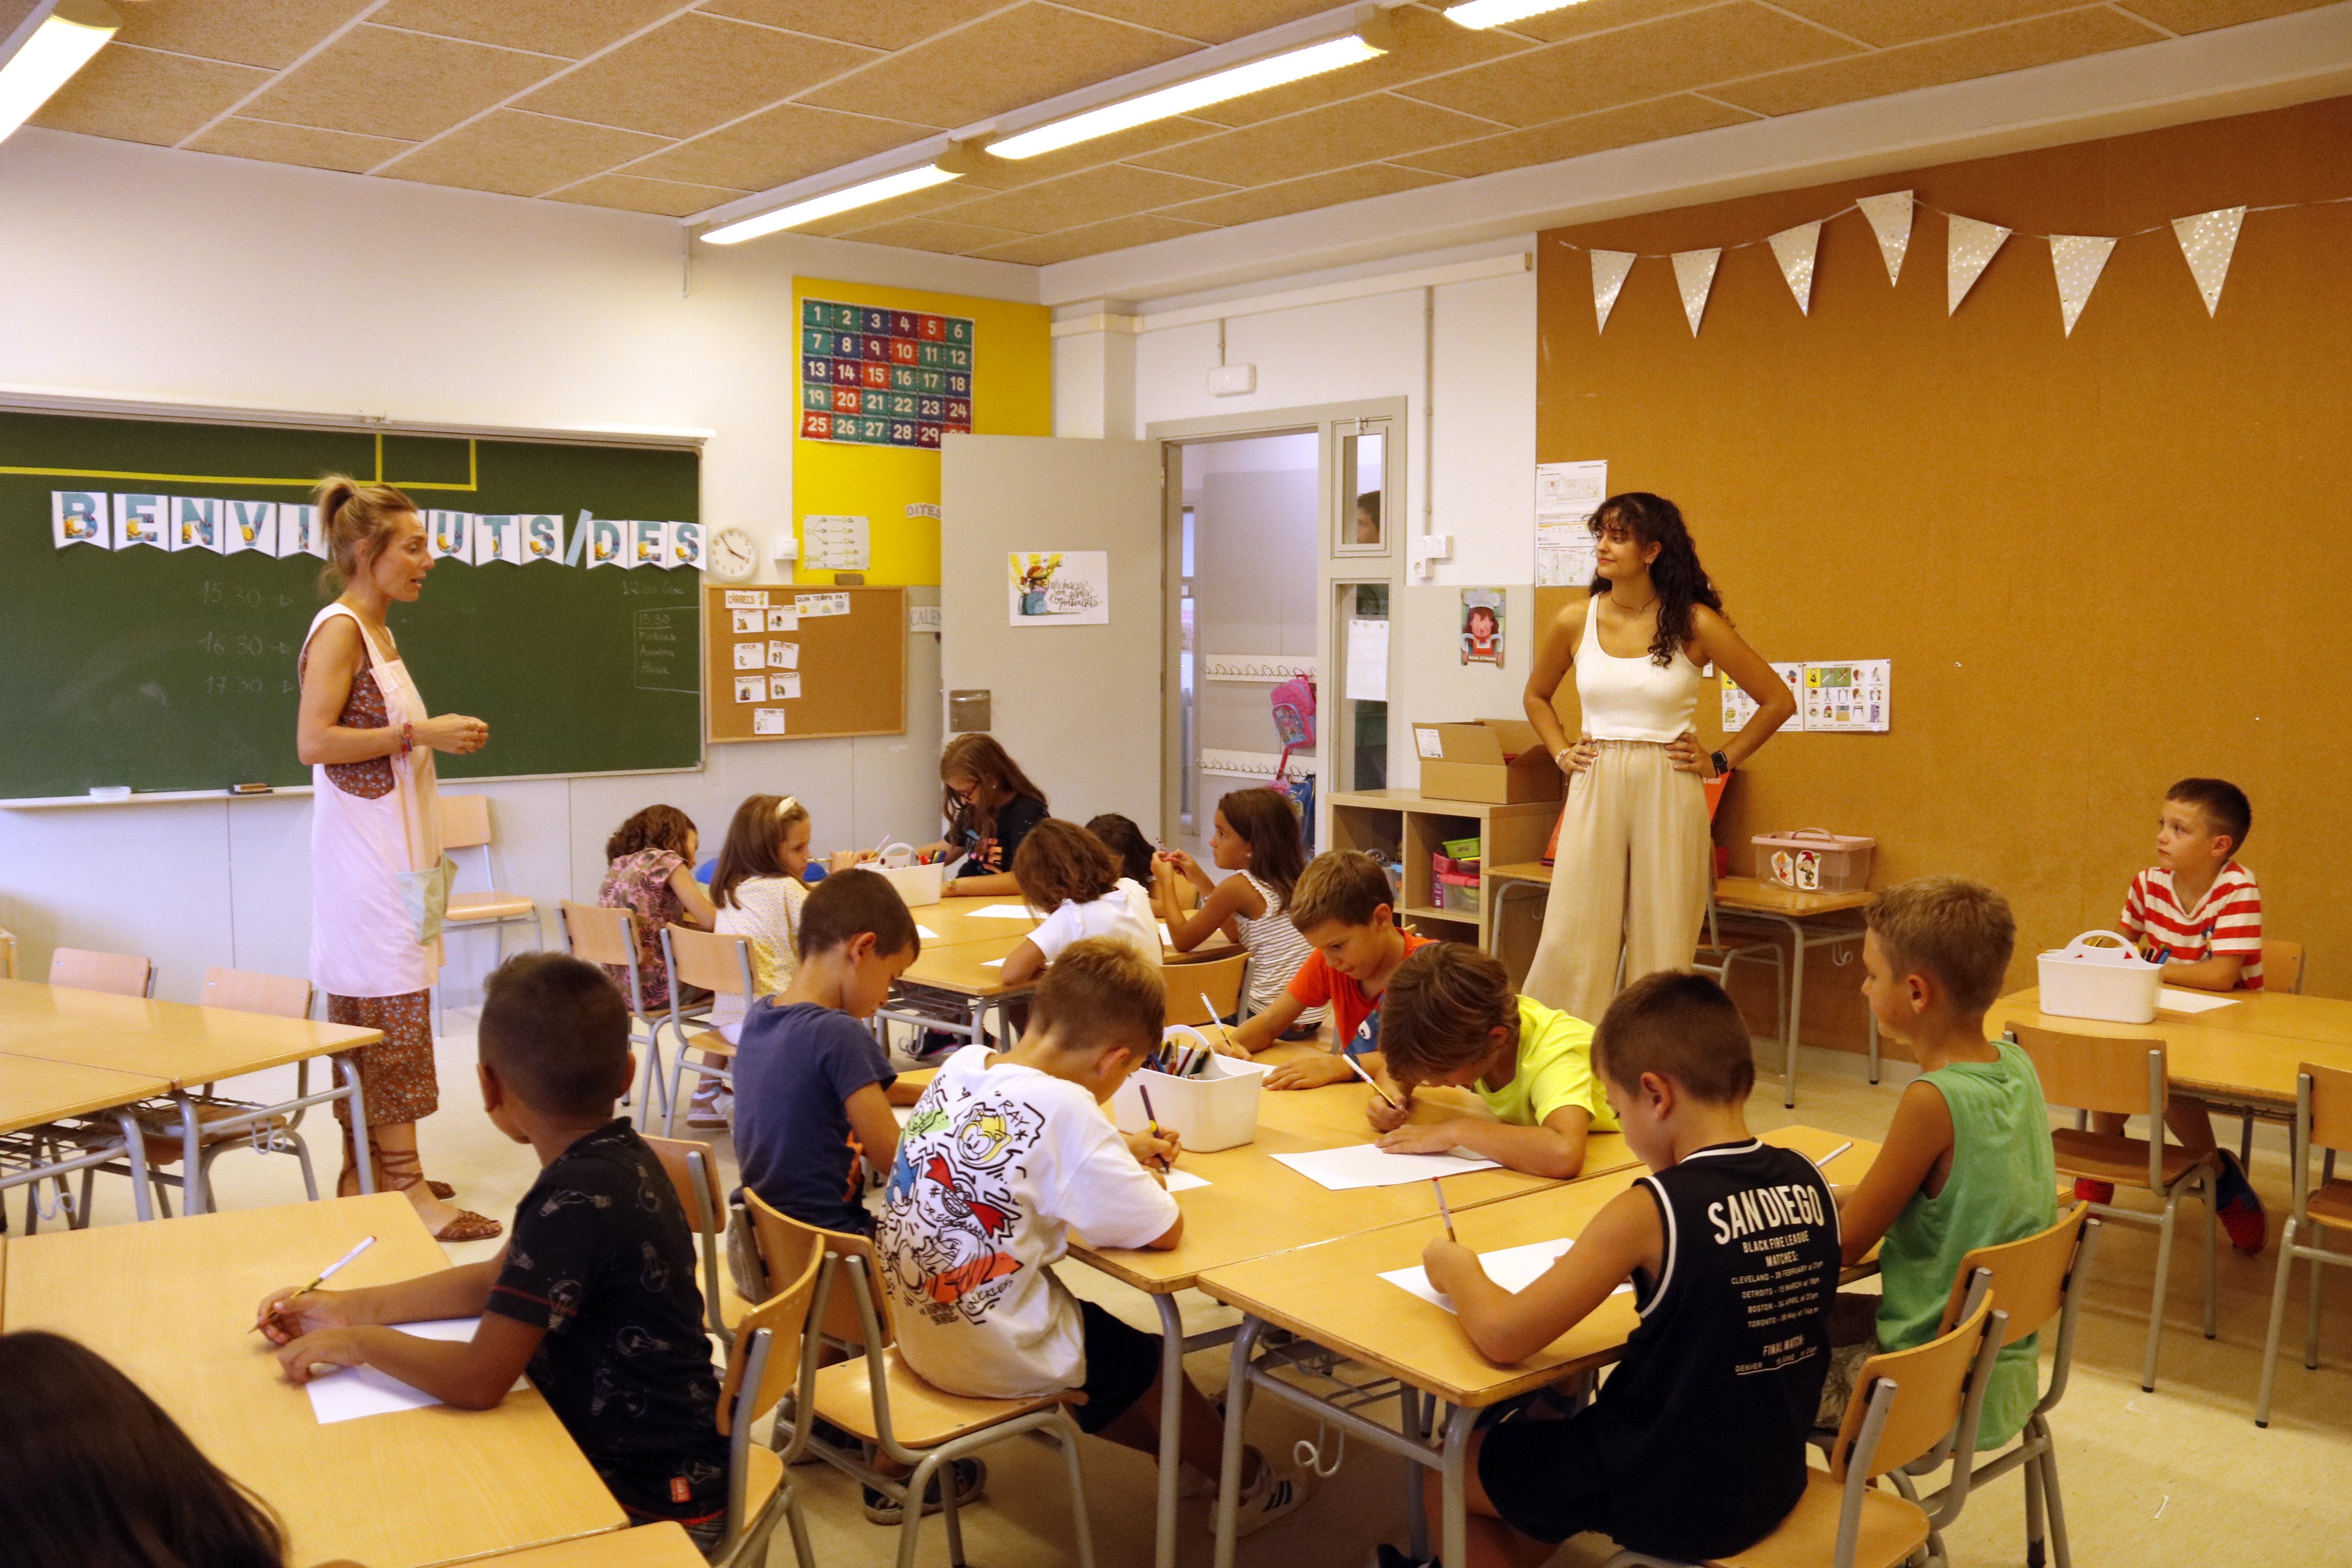 L'Hospitalet declara l'emergència educacional a la ciutat i urgeix la intervenció del Govern